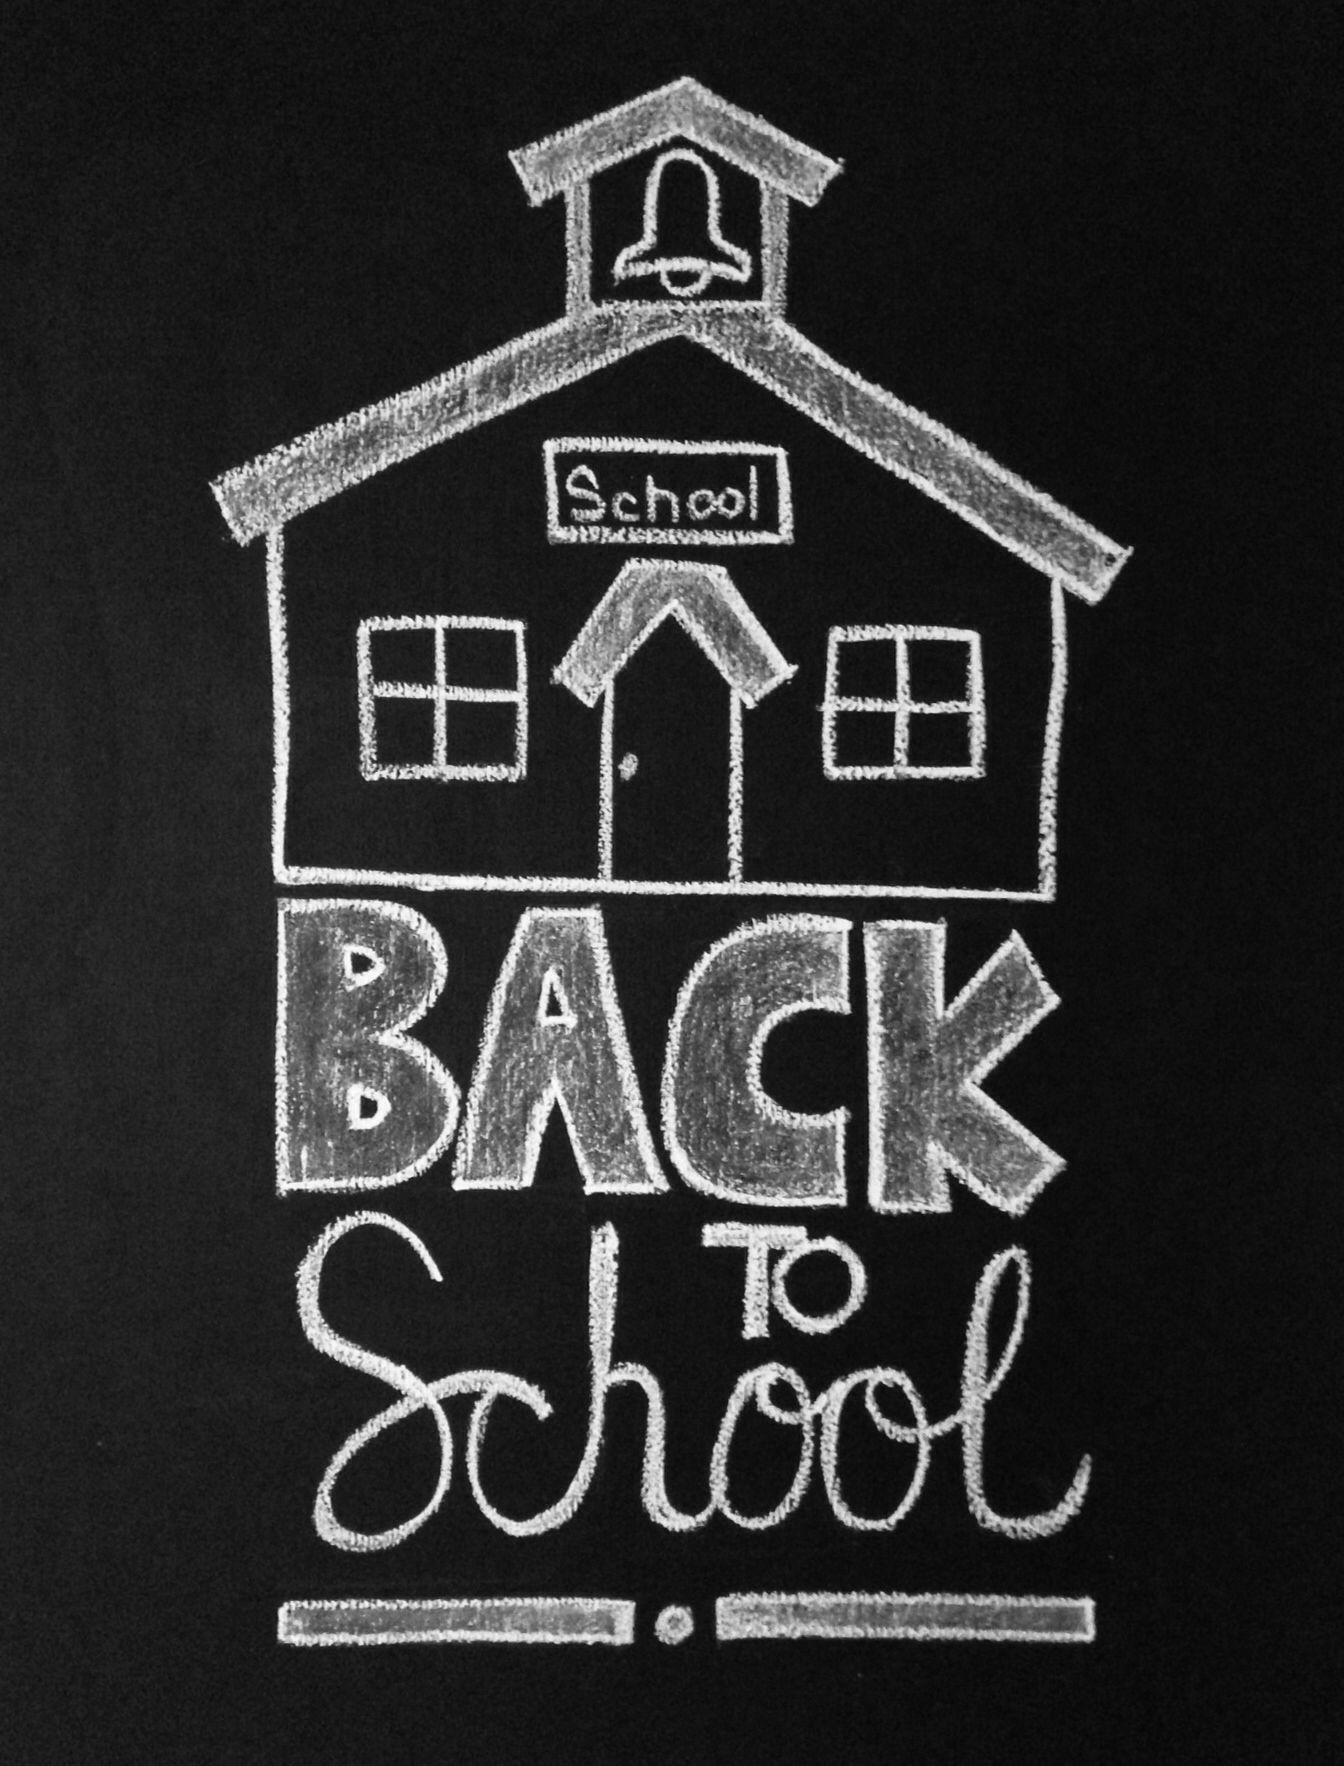 chalkboard clipart school